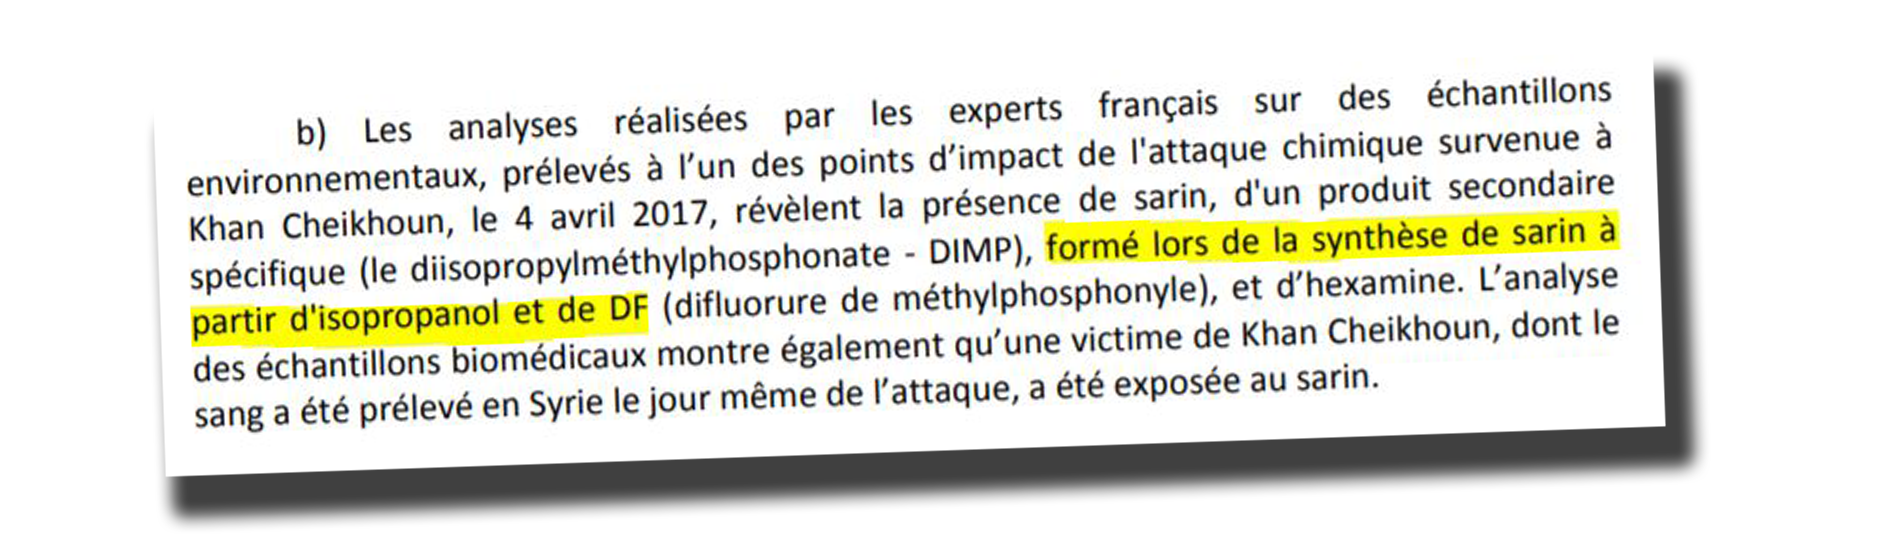 Extrait du rapport français, évoquant l'utilisation d'isopropanol lors de la synthèse du gaz sarin utilisé lors d'une attaque chimique.